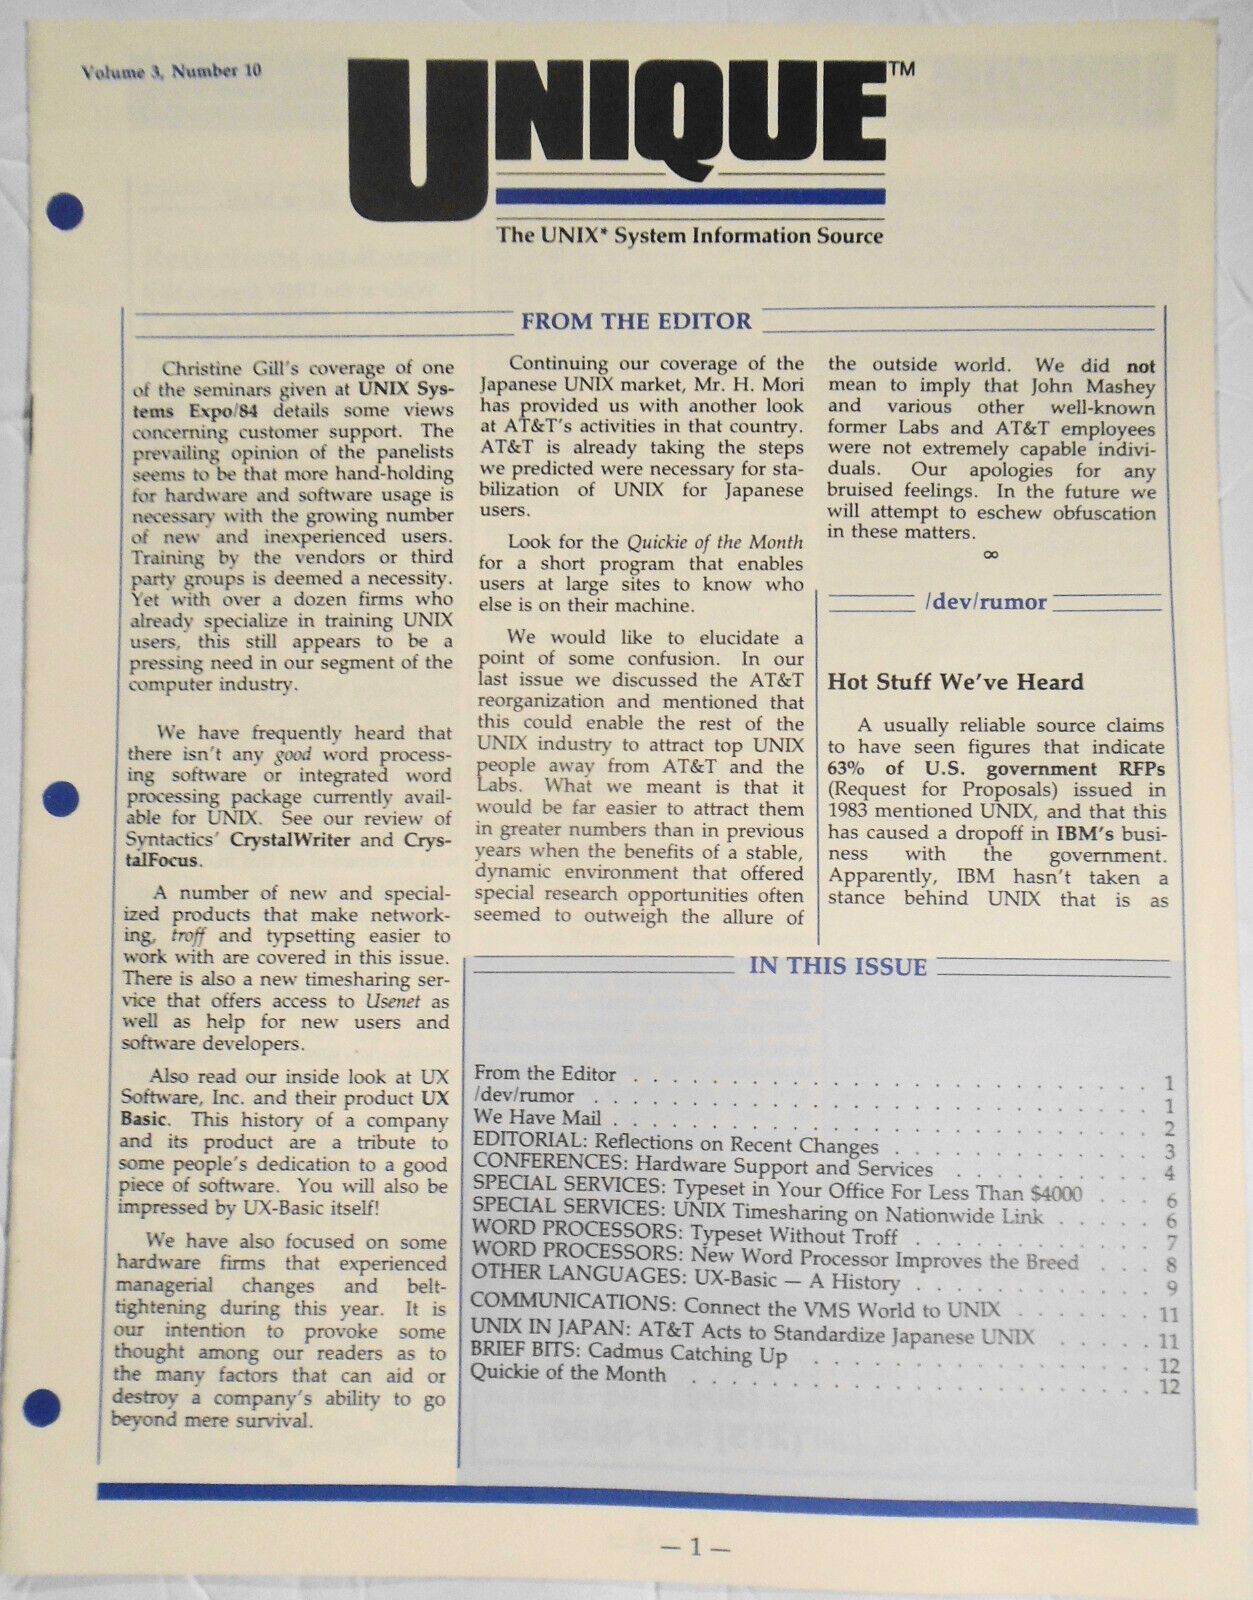 UNIQUE,  Vol. 3, No.  10, 1984 - The UNIX System Information Source.